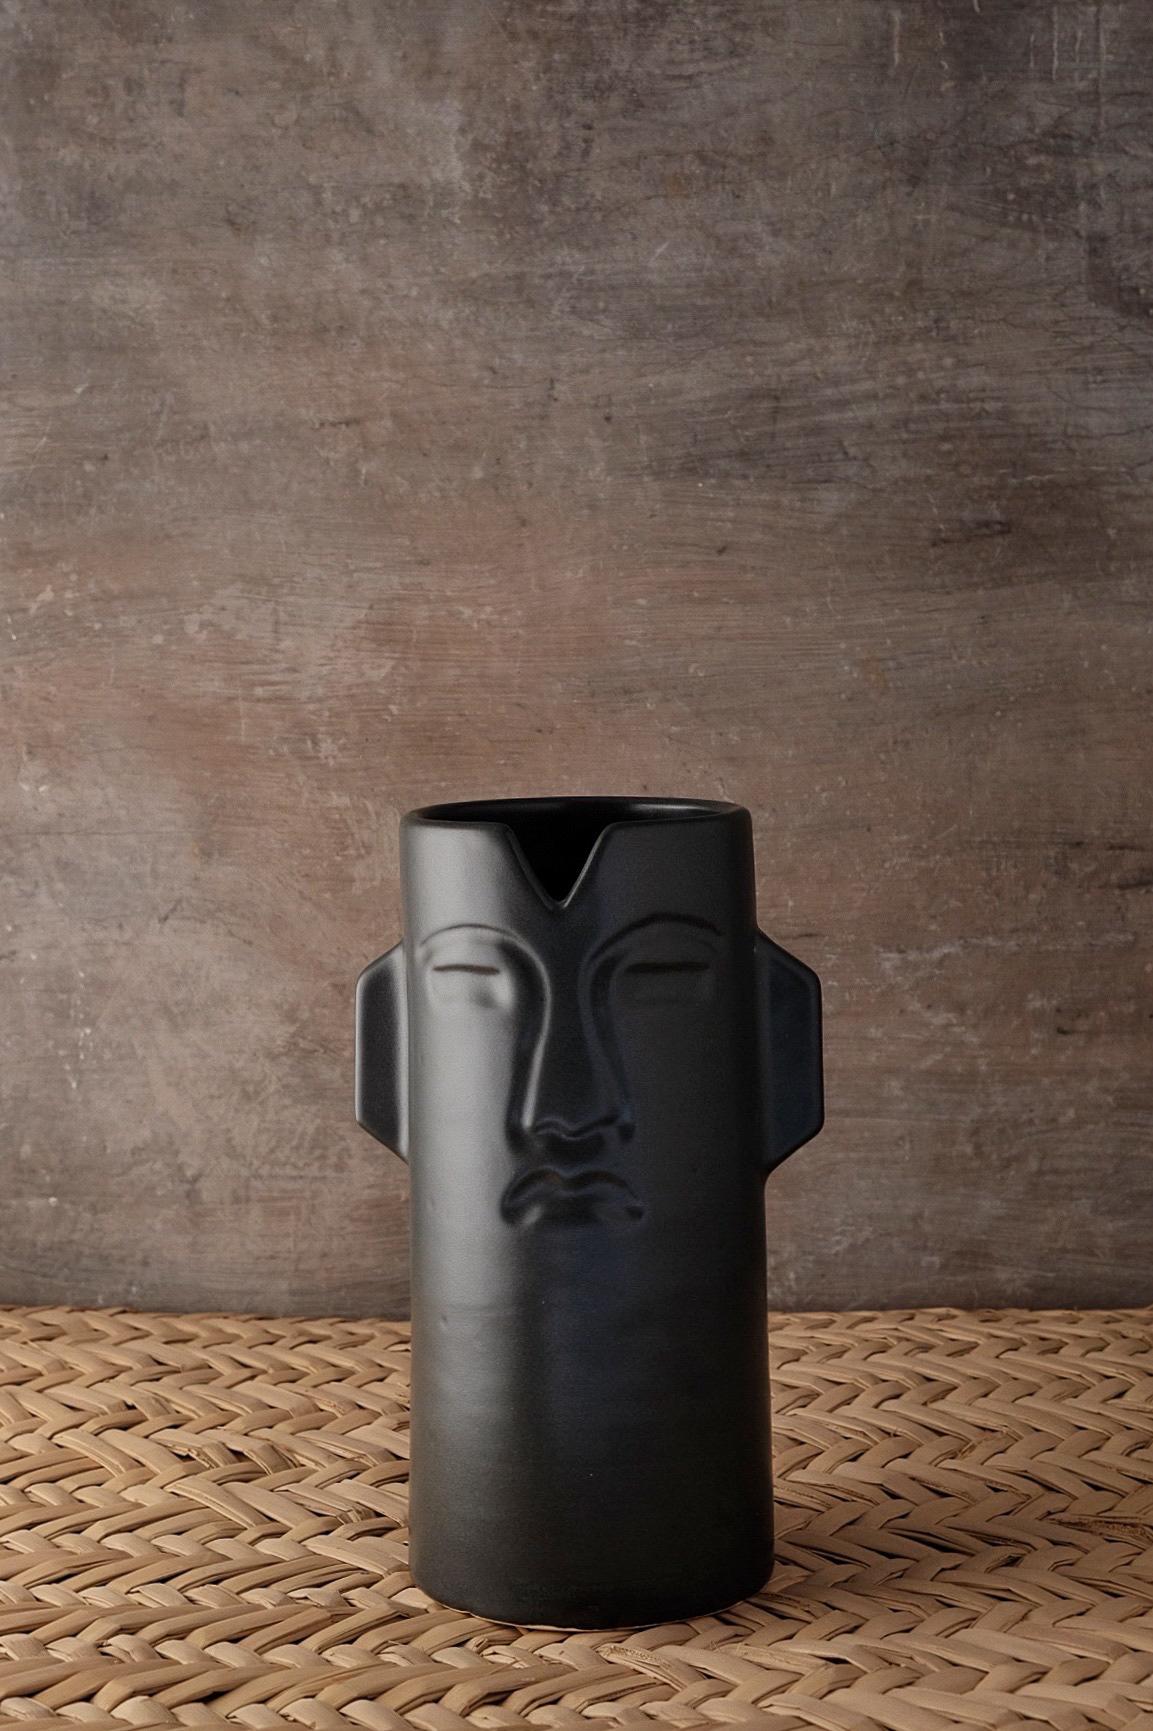 Vase en céramique Chac d'Onora
Dimensions : D 12 x 25 cm
Matériaux : Céramique
Disponible en noir, blanc et sable.

Ce vase en céramique fait référence à des masques cérémoniels préhispaniques. Moulé par des artisans de l'État du Mexique.

Cette